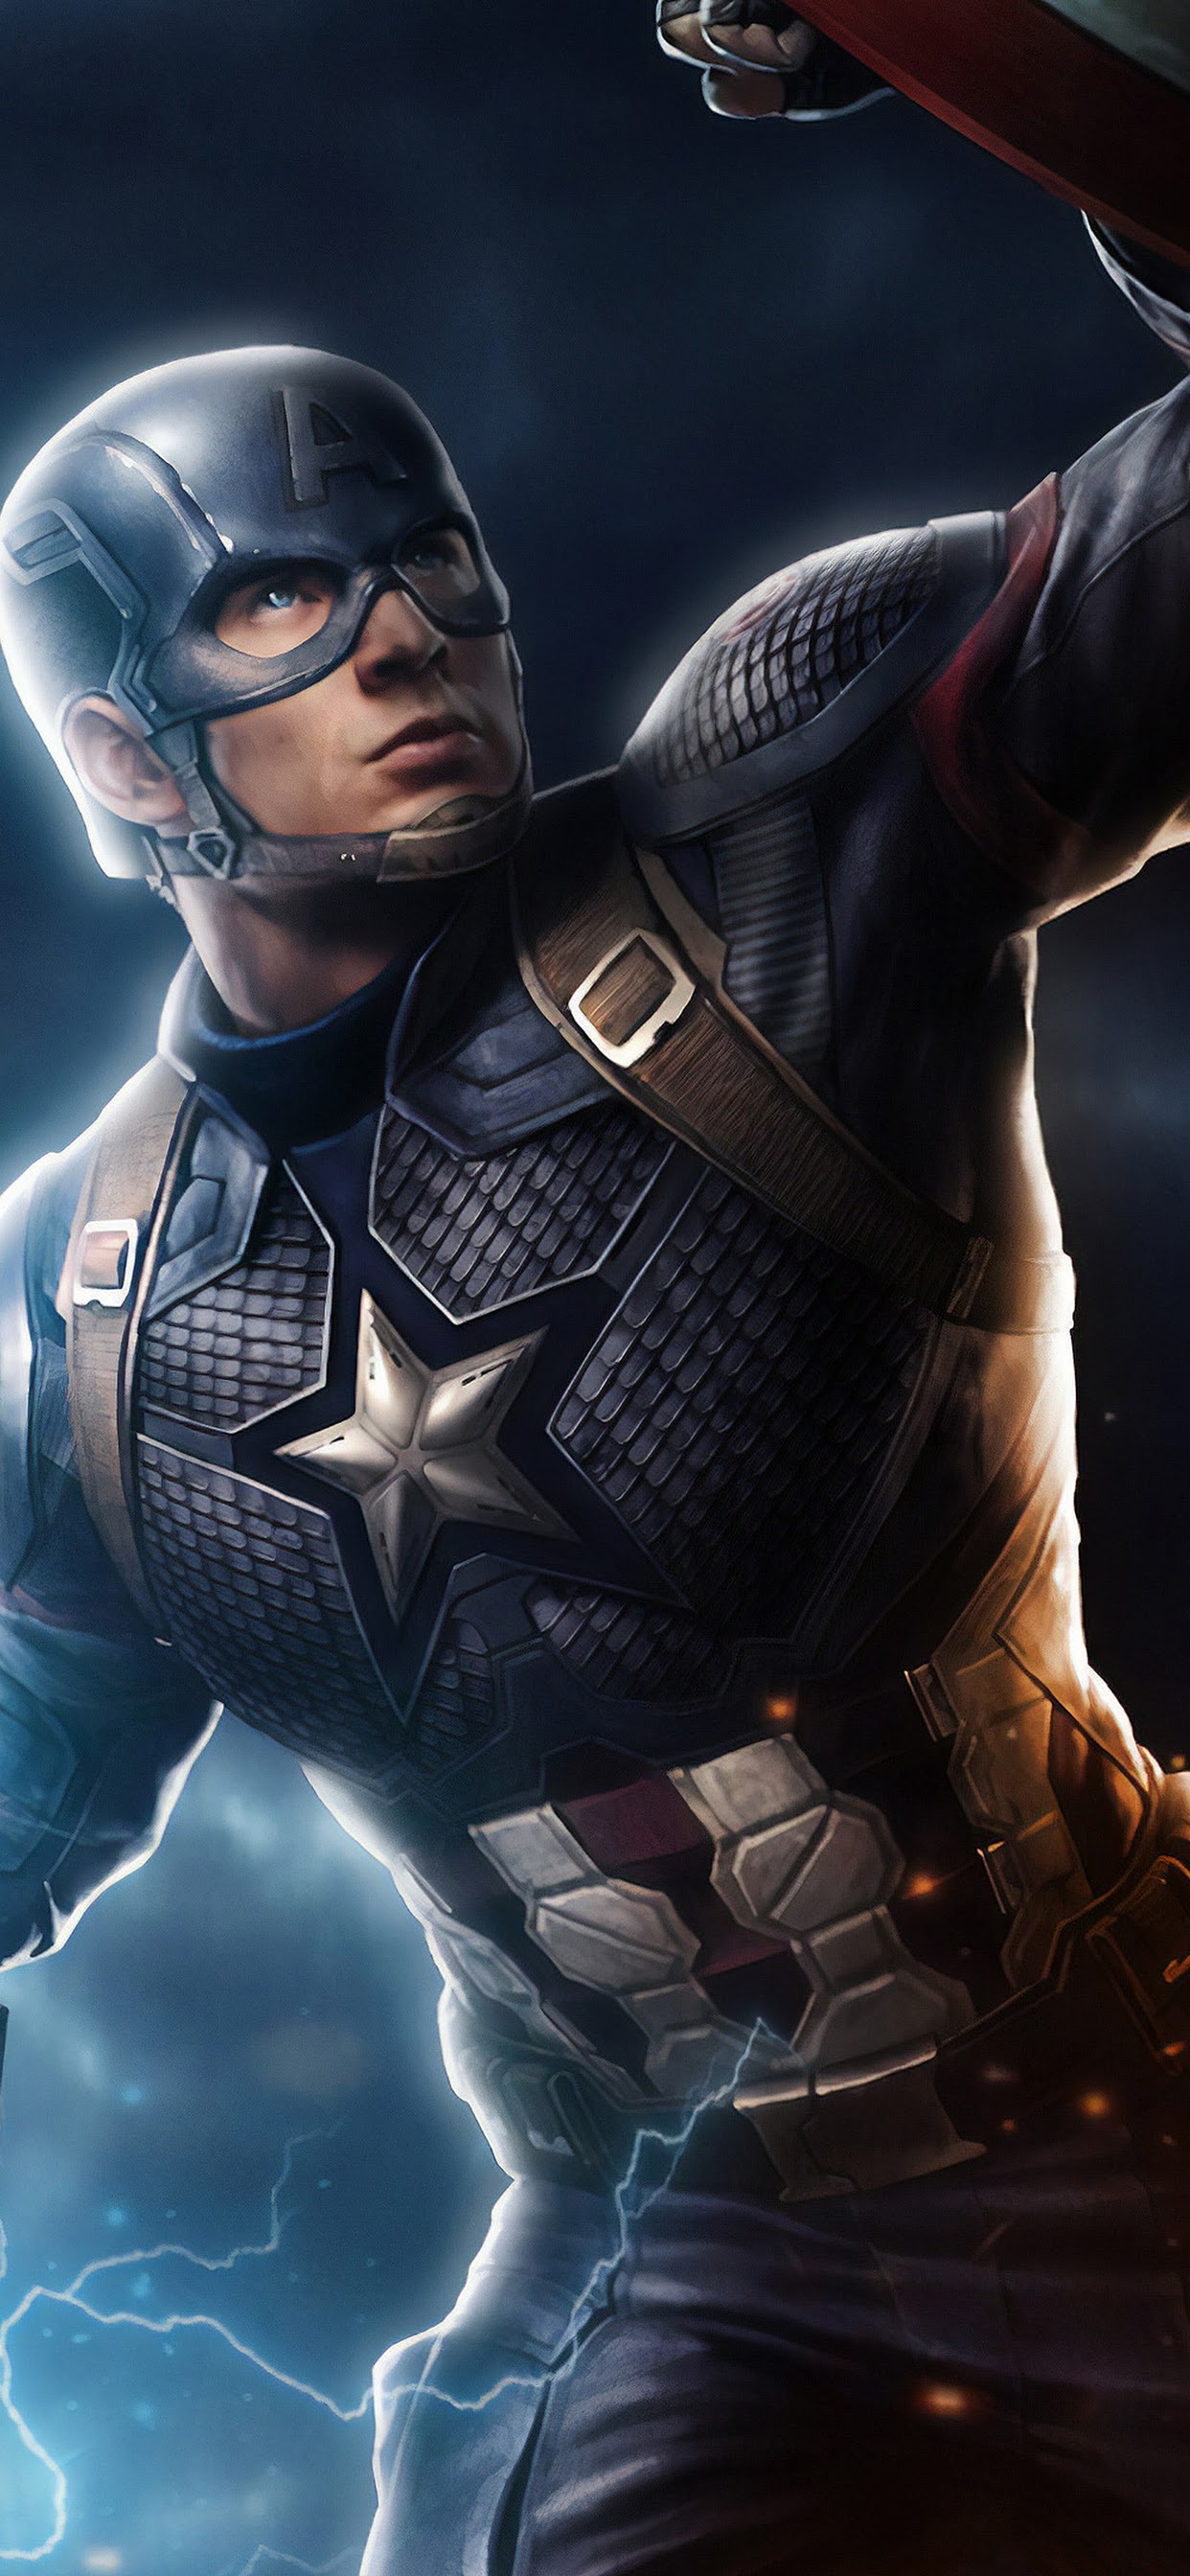 캡틴 아메리카 배경,슈퍼 히어로,소설 속의 인물,배트맨,영웅,사법 리그